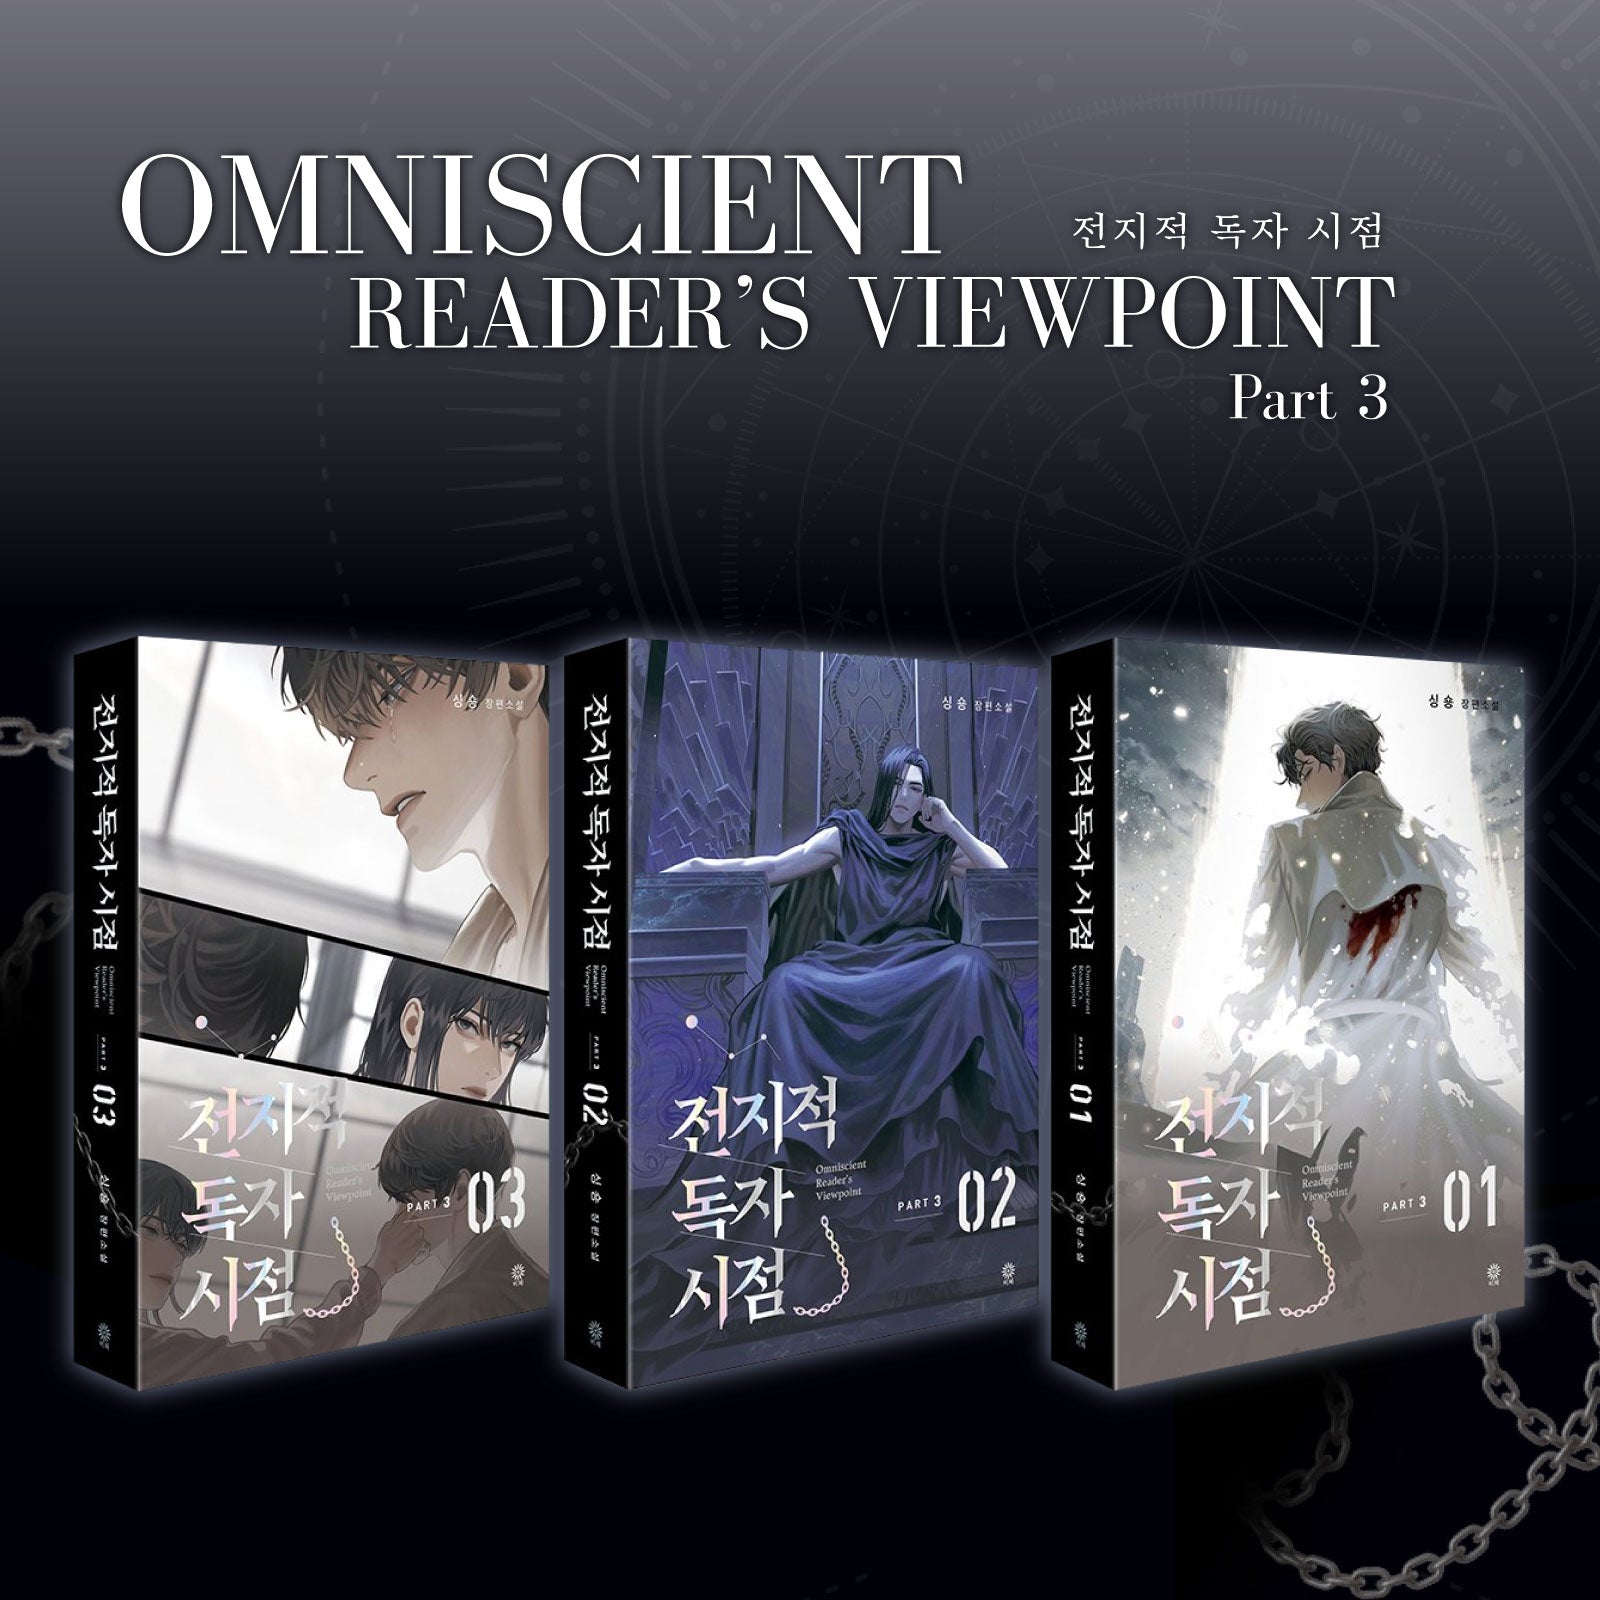 EXPRESS] Omniscient Reader's Viewpoint Limited Part 2 Part 3 Novel  Merchandise